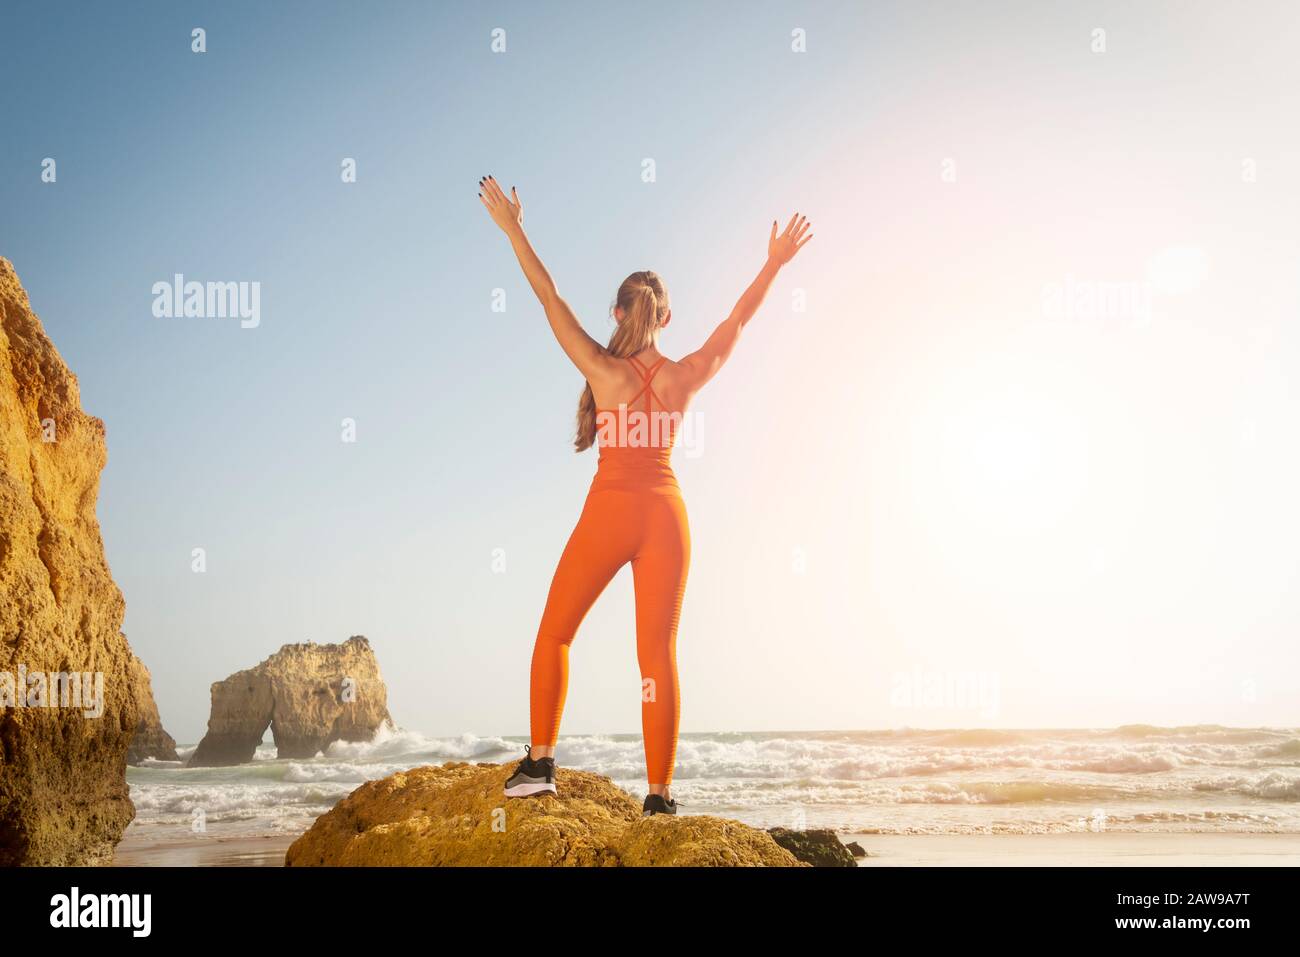 Rückansicht einer fit-Frau mit orangefarbener Sportbekleidung, die auf einem Felsen am Meer steht und mit ihren Armen in Feier, Freiheit angehoben wird. Stockfoto